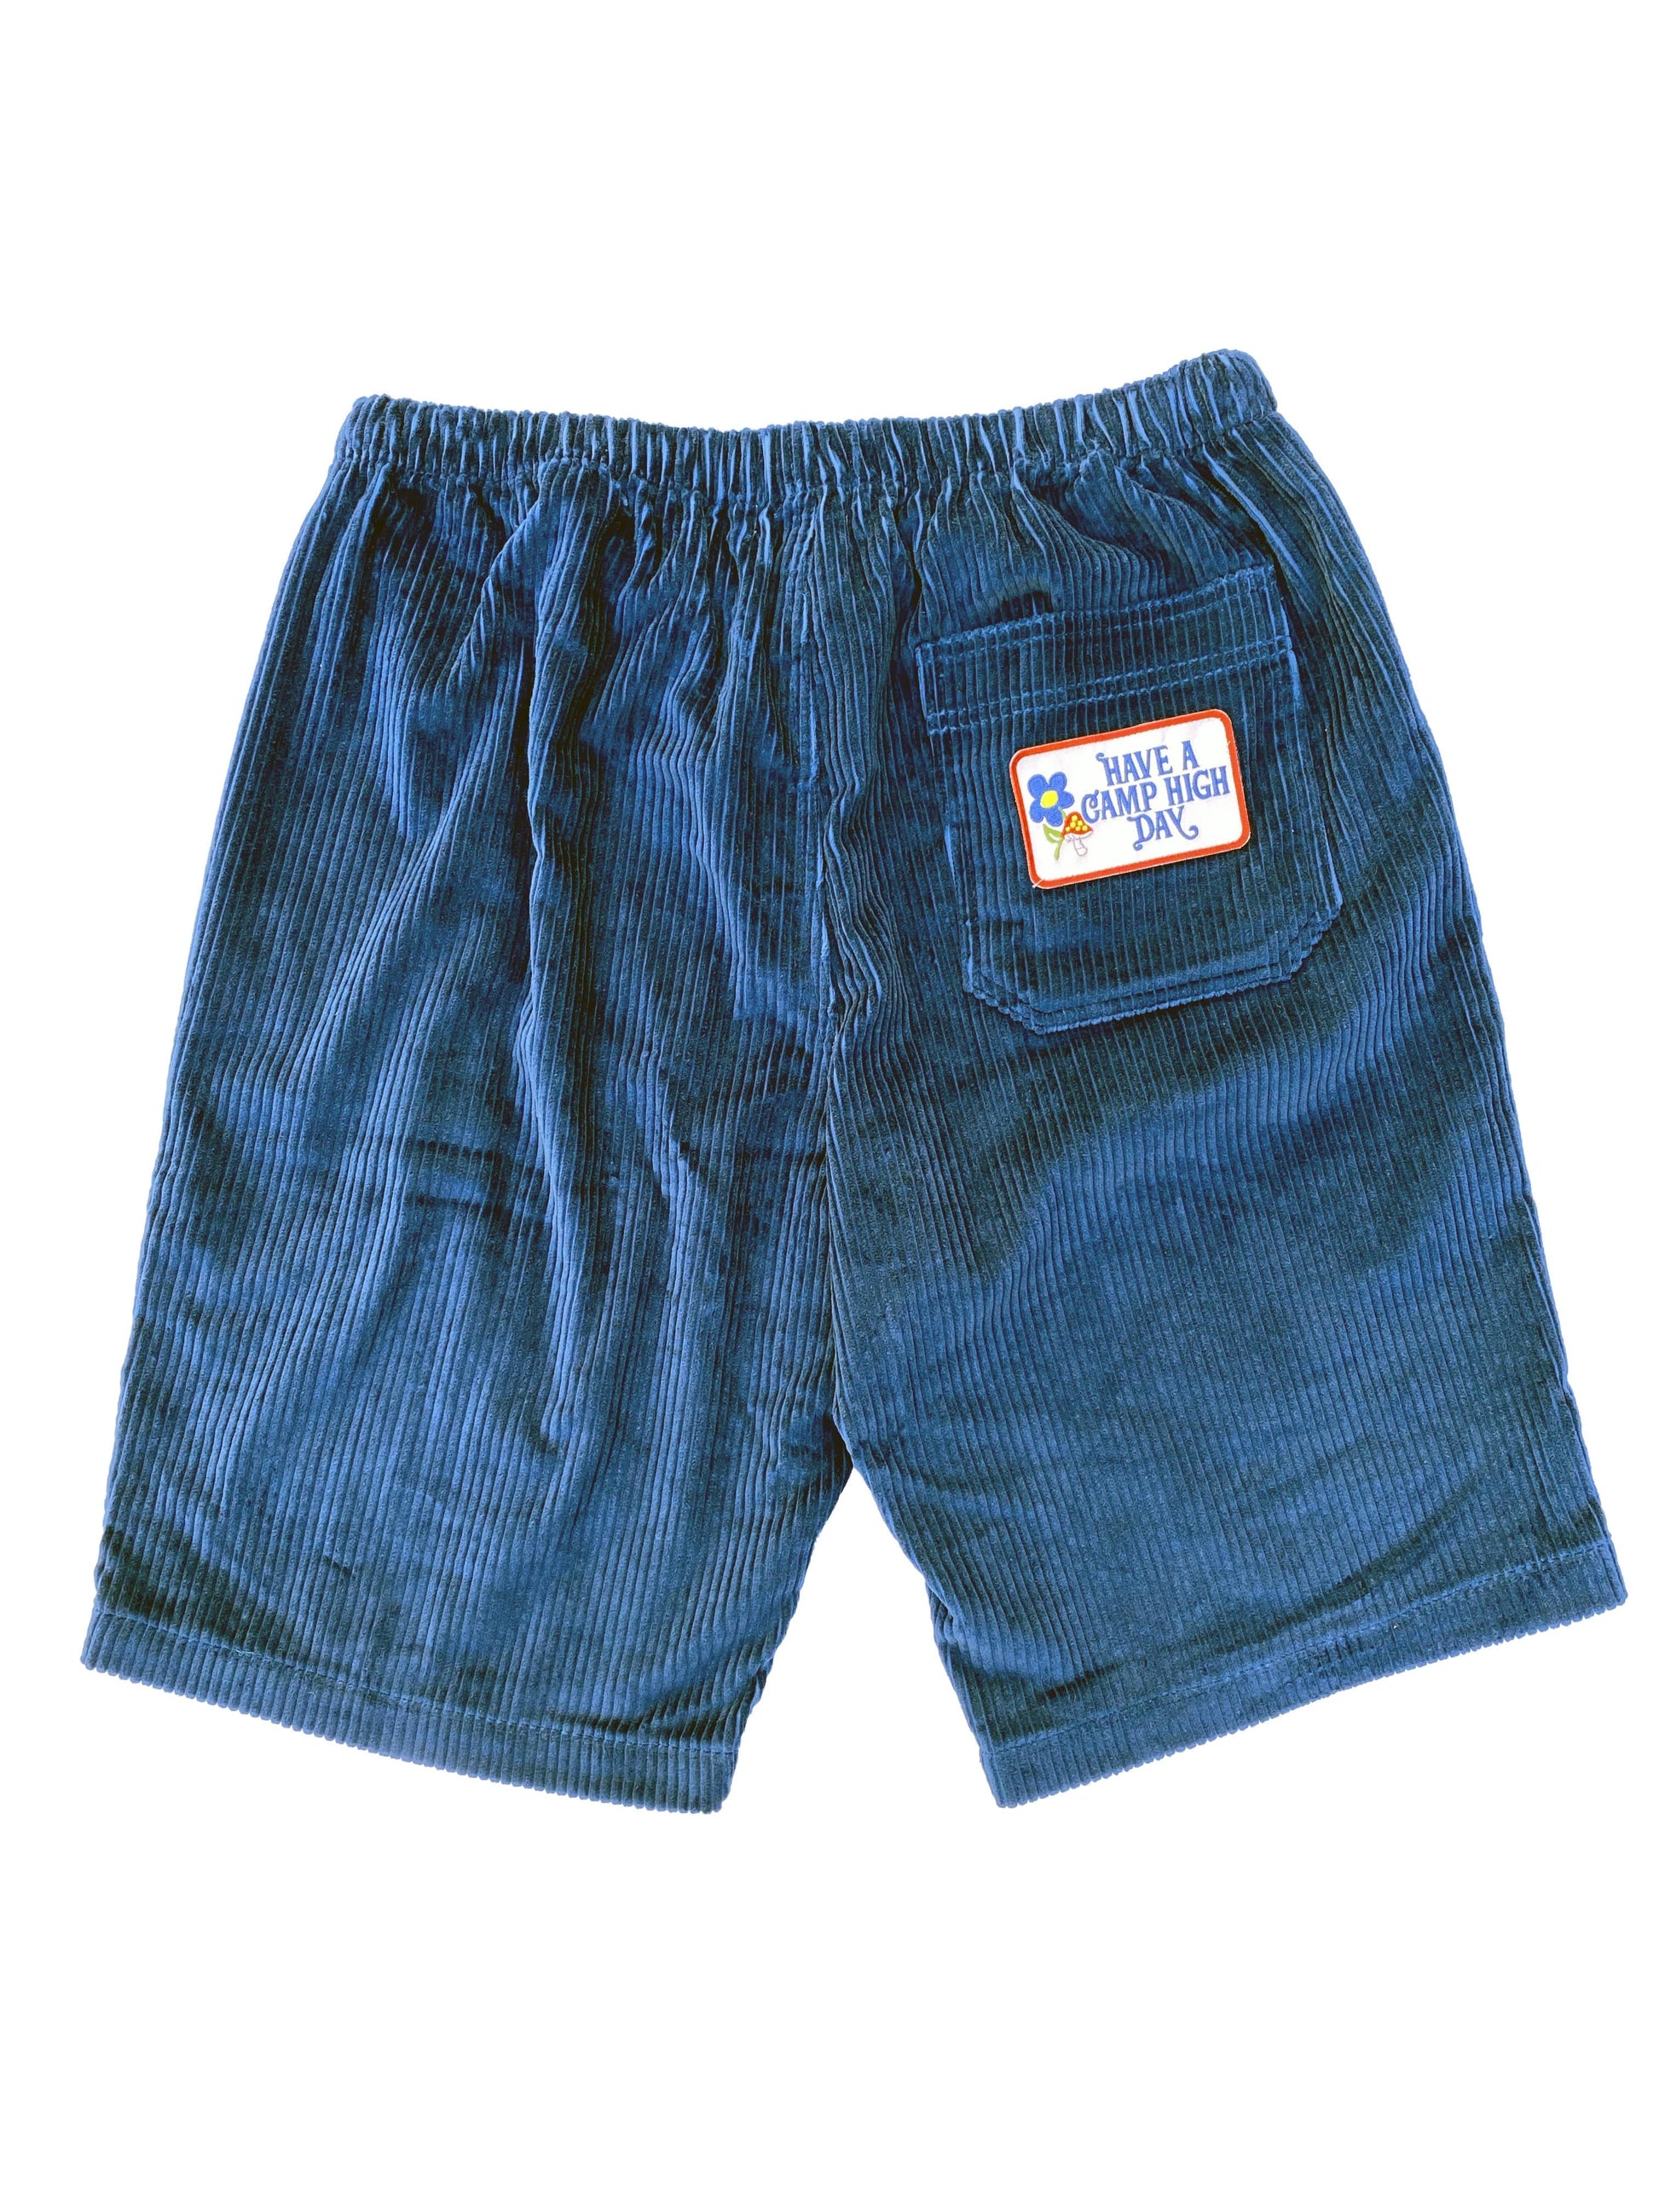 Camp High Blue / L/XL Zen Cord Shorts